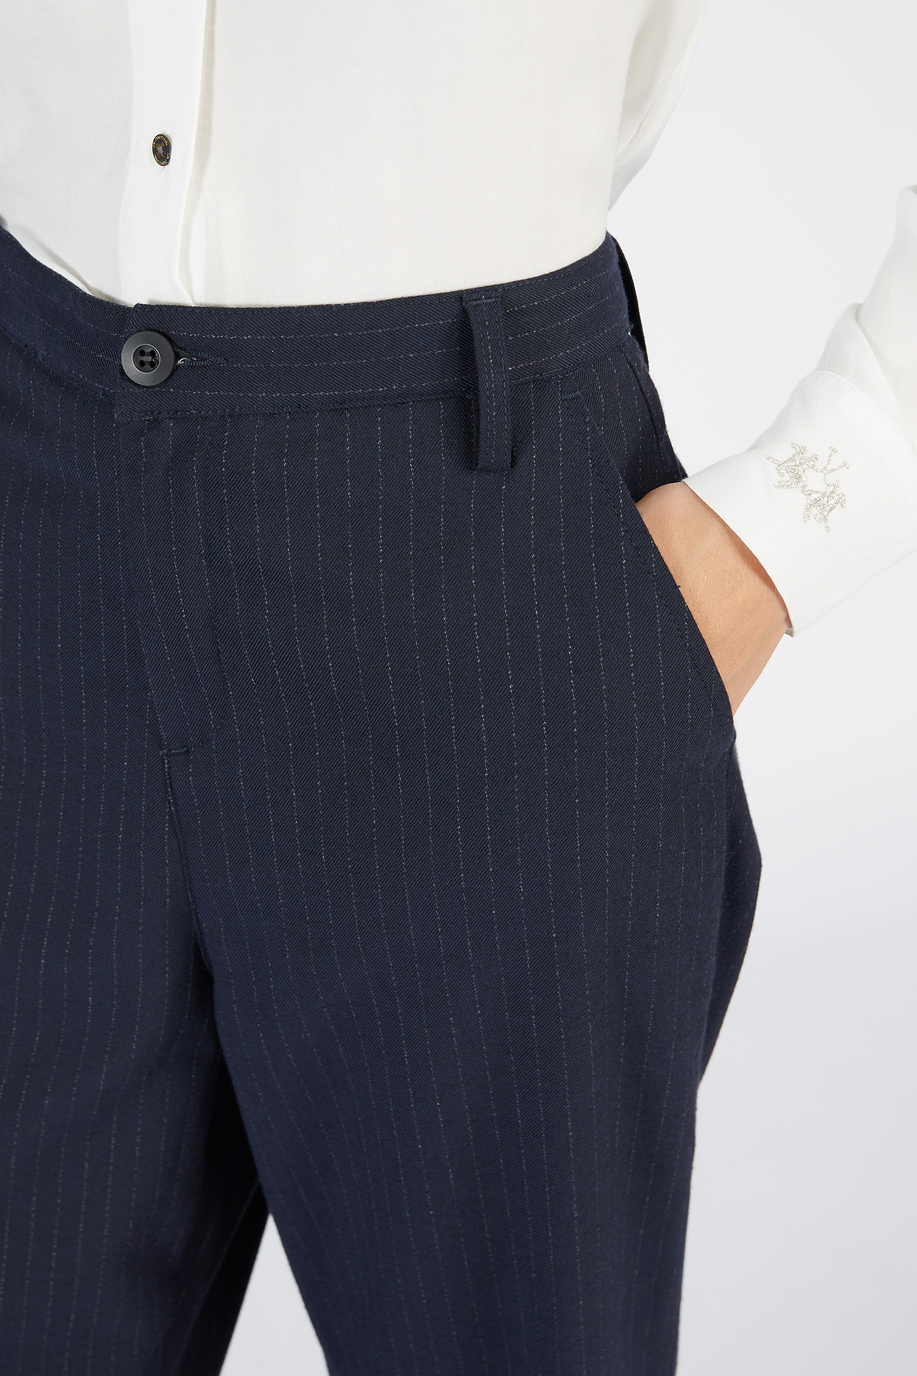 High waist women’s wide-leg trousers | La Martina - Official Online Shop